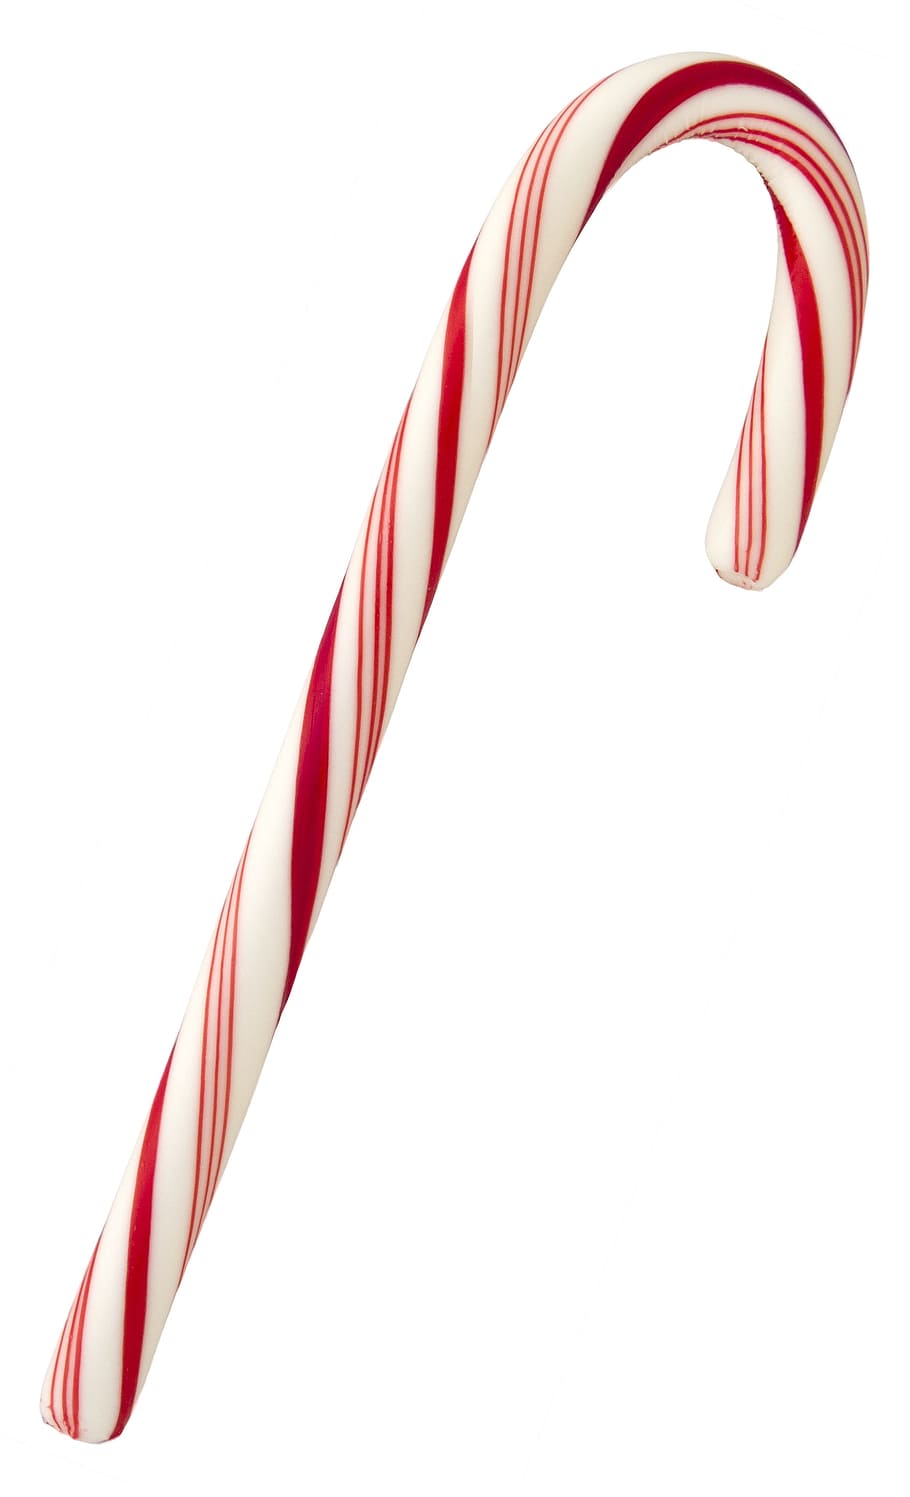 Blanco, rojo, bastón de caramelo, menta, caramelo, navidad, dulce, vacaciones, comida, rayas